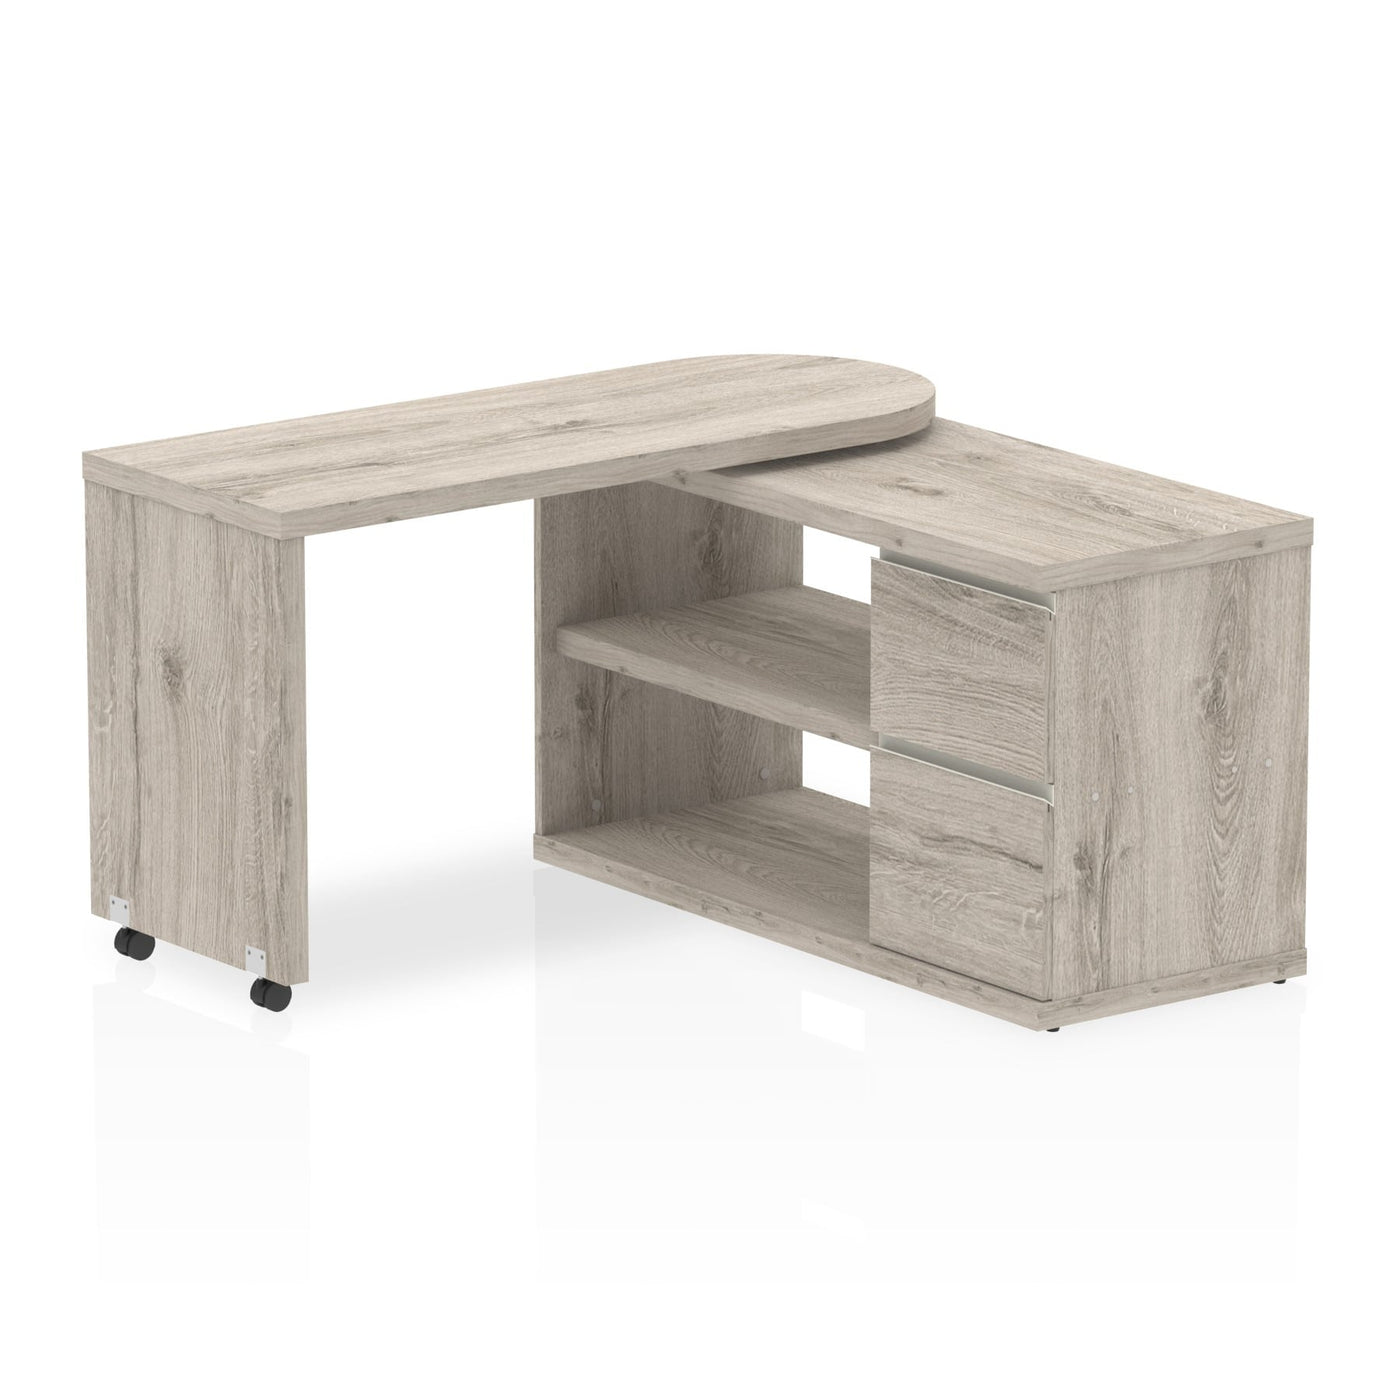 Fleur Smart | Home Office Furniture | Smart Storage Desk | Homework Desk | Work From Home Desk  | Wooden Desk | Desk Converts to Storage | Desk that does not look like a desk